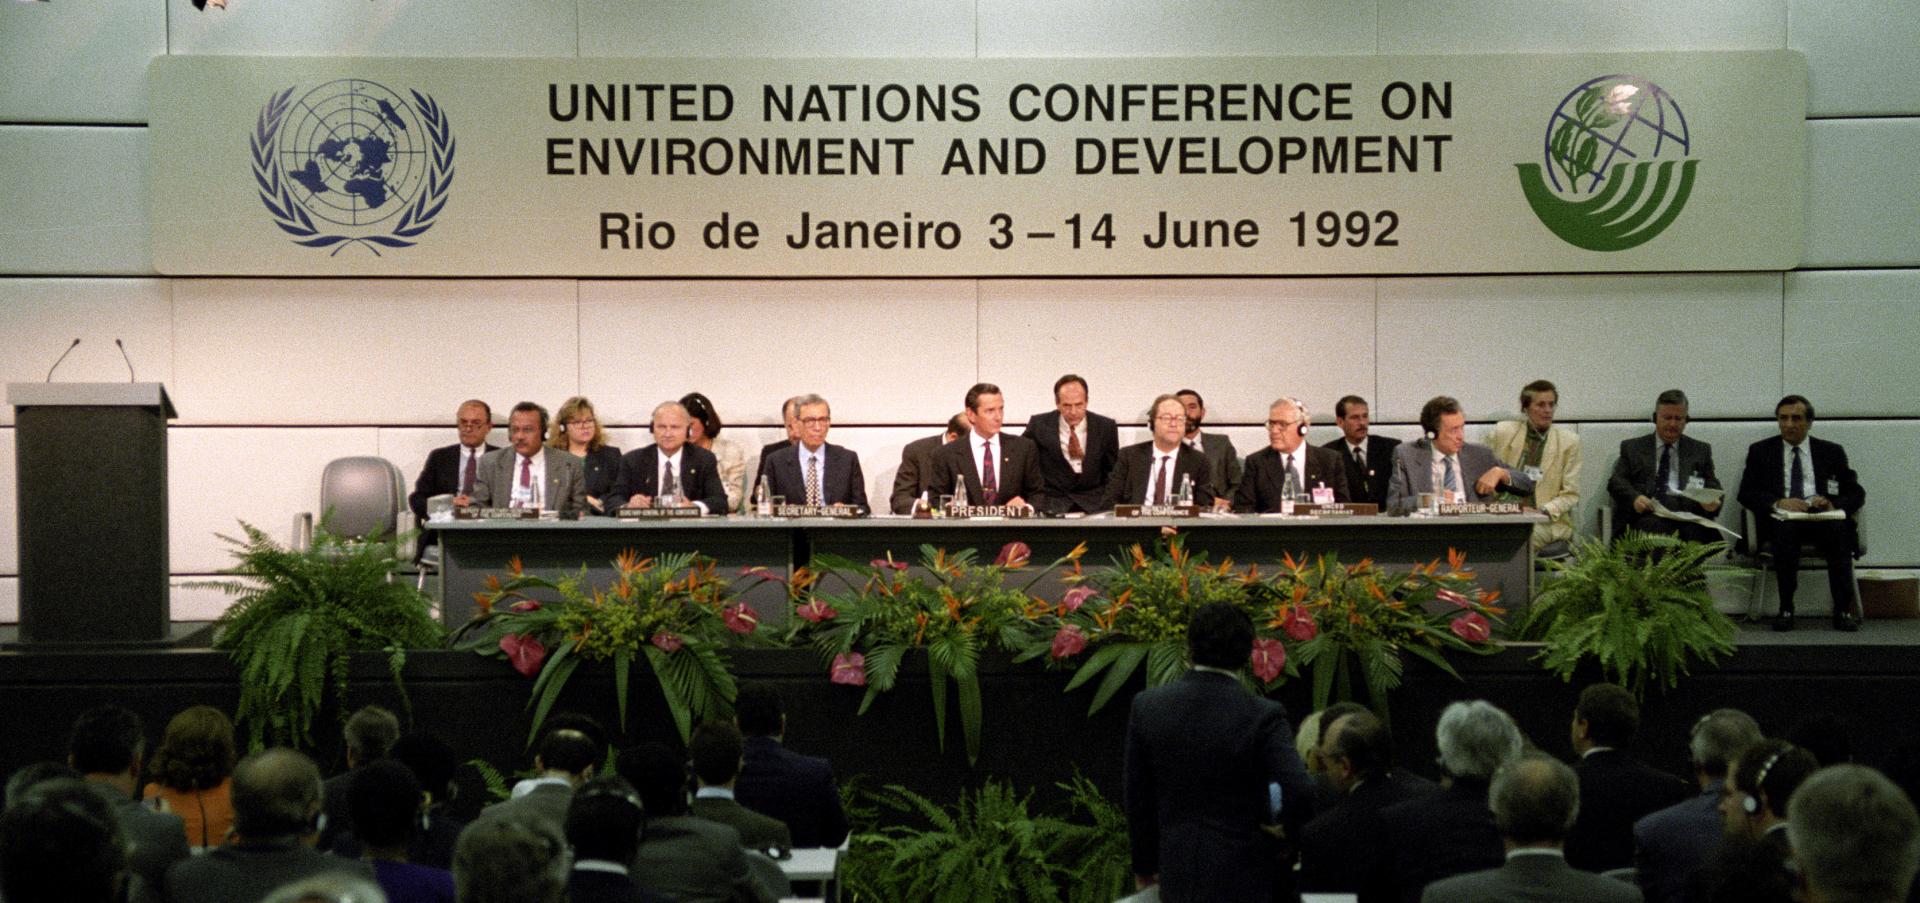 Декларация 1992. Конференция ООН по окружающей среде и развитию Рио-де-Жанейро 1992 г. Конференция ООН по окружающей среде и развитию. Конференция в Рио де Жанейро 1992. Рио де Жанейро 1992 конференция экология.